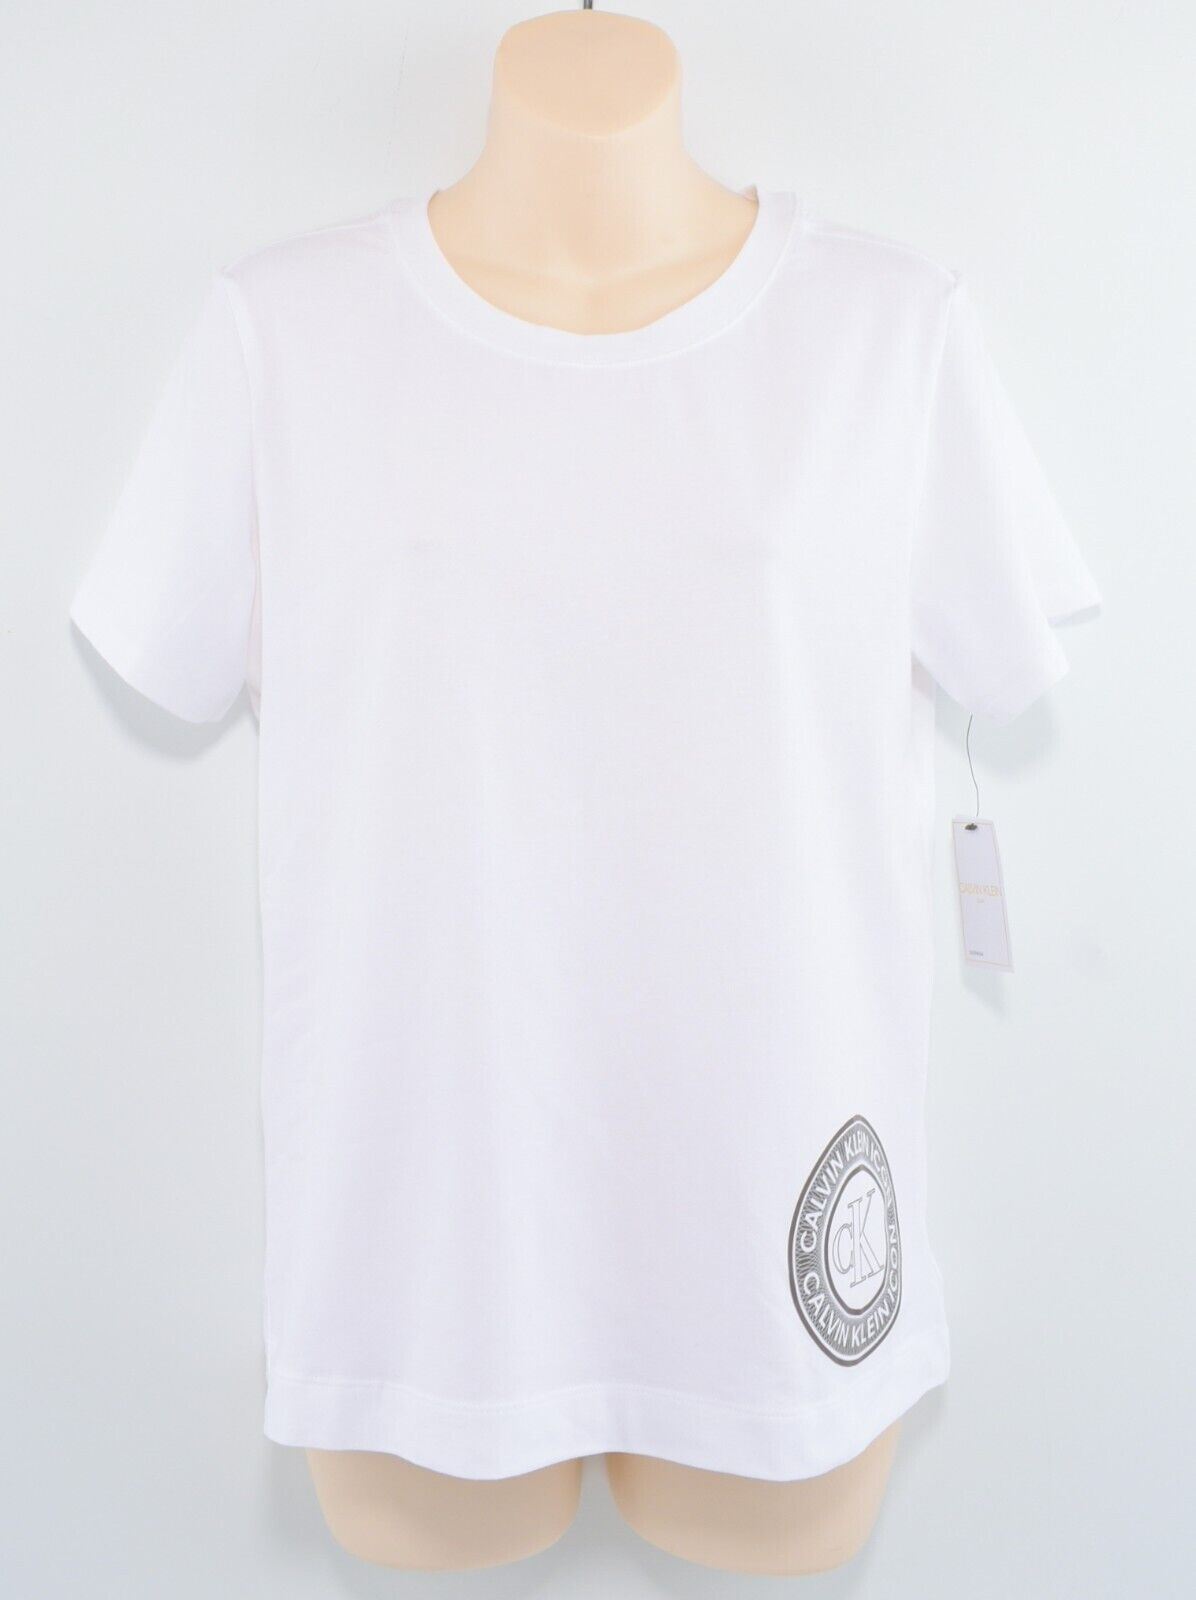 CALVIN KLEIN Women's ICON Logo Lounging / Pyjama T-shirt Top, White, size S